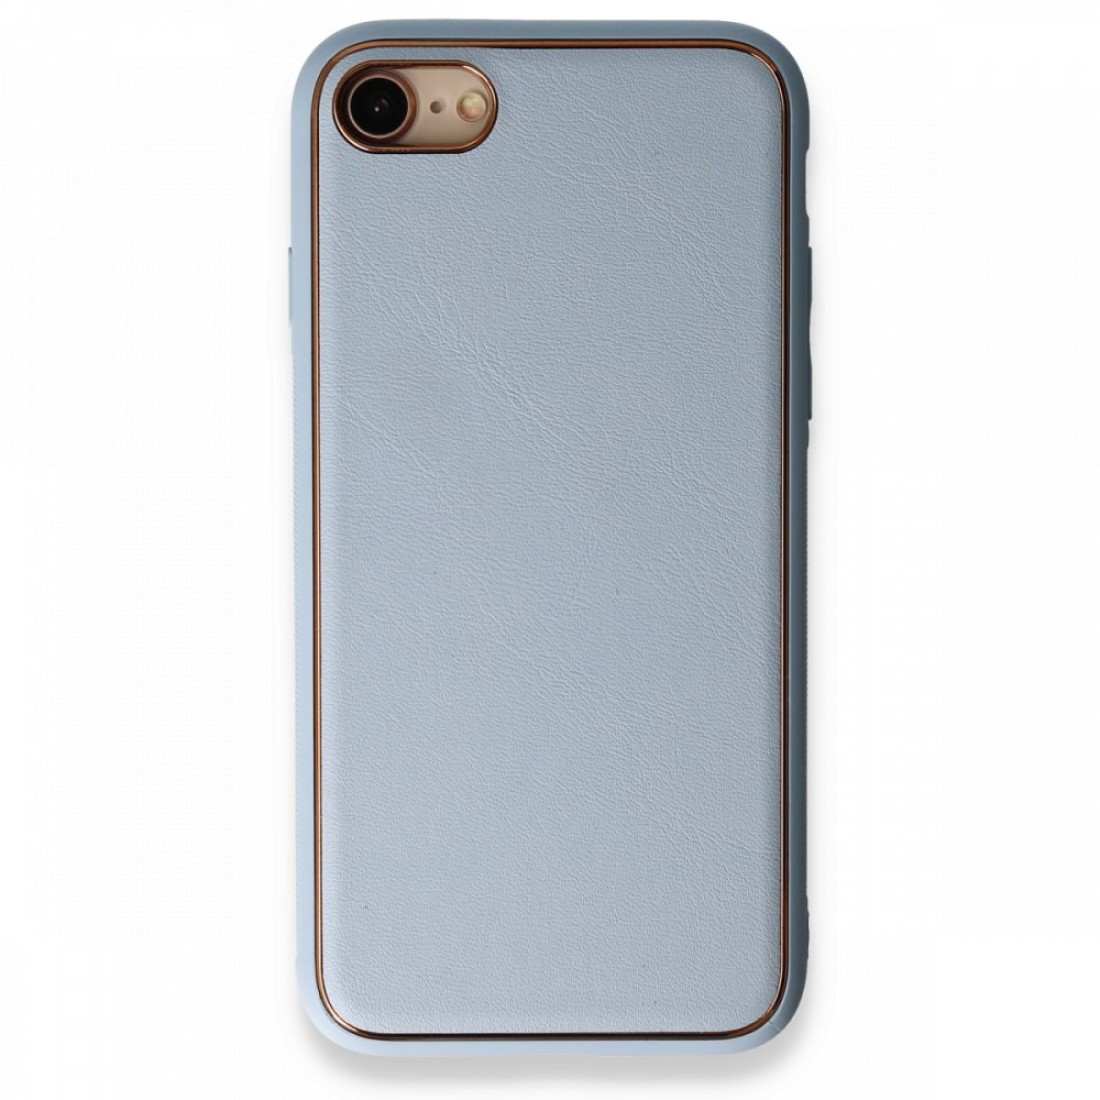 Apple iPhone 8 Kılıf Coco Deri Silikon Kapak - Açık Mavi